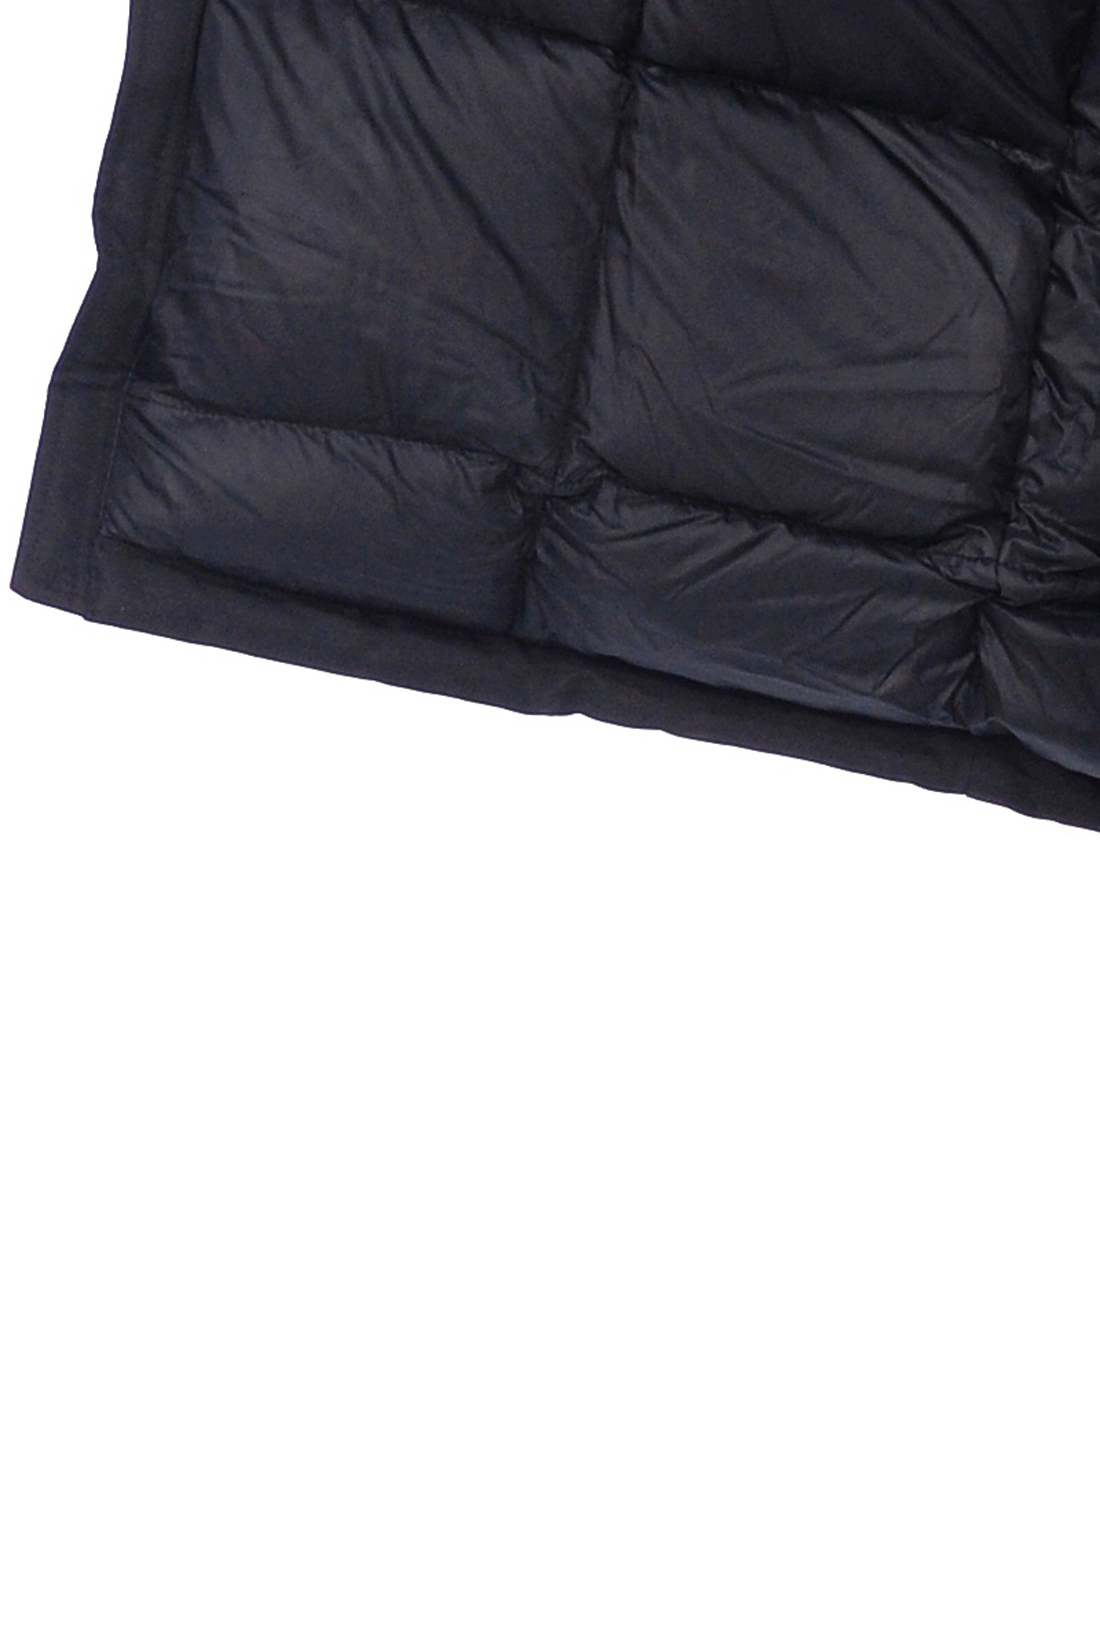 Пуховик-парка с непродуваемым капюшоном (арт. baon B508550), размер L, цвет черный Пуховик-парка с непродуваемым капюшоном (арт. baon B508550) - фото 4